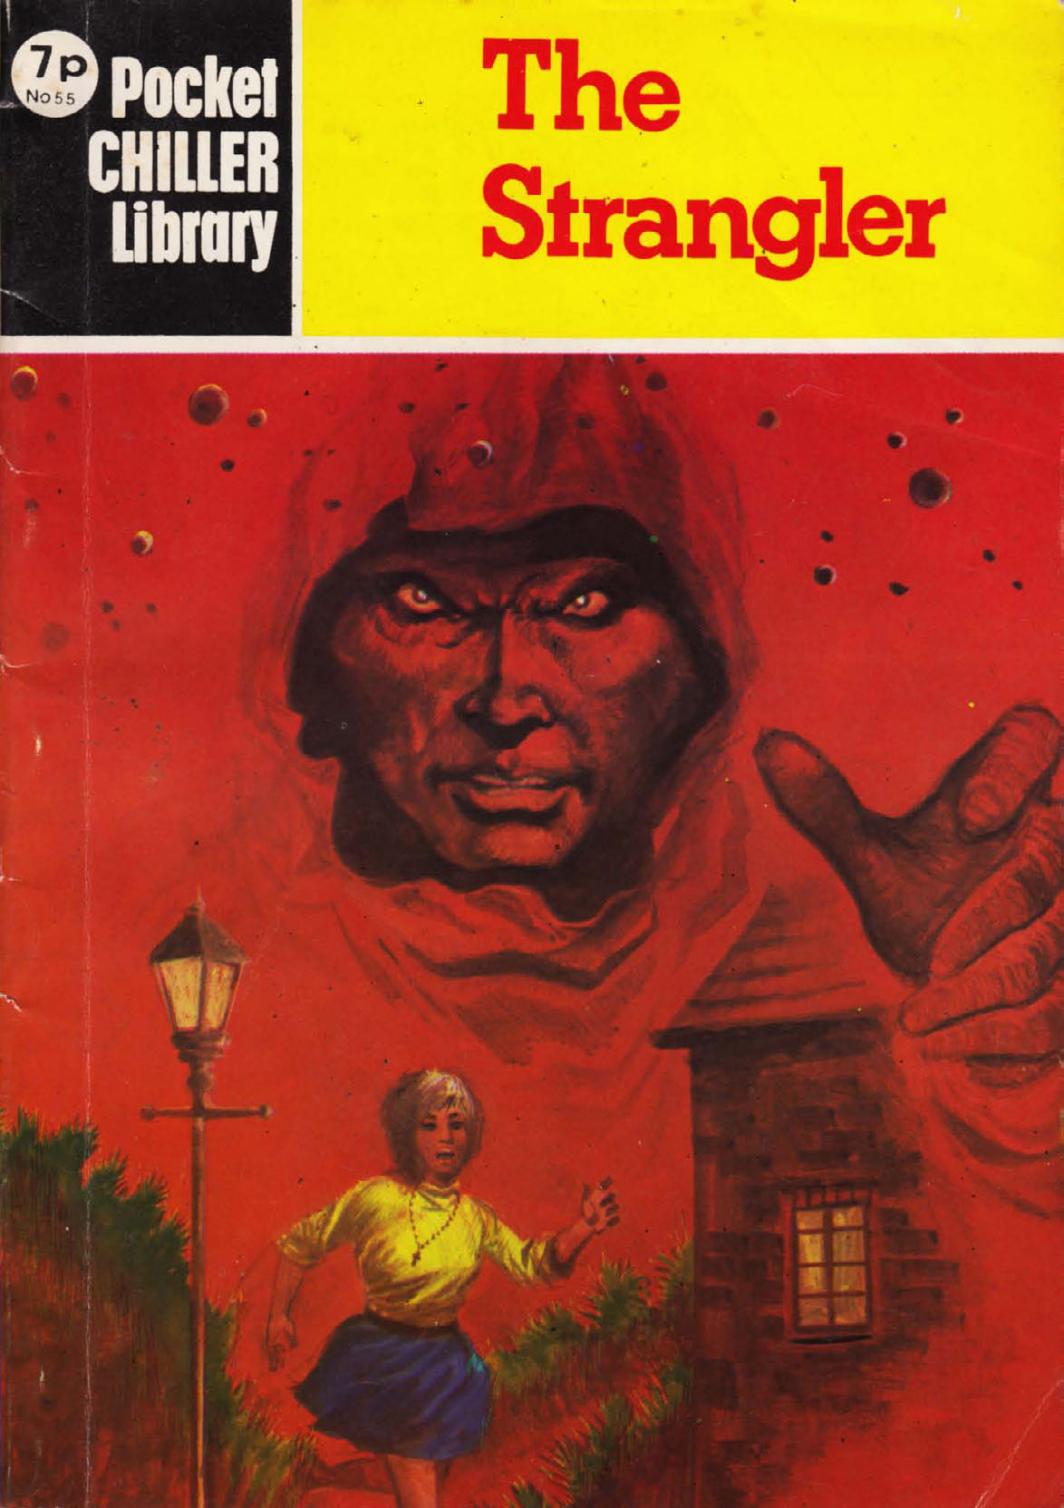 Pocket Chiller Library 55 - The Strangler